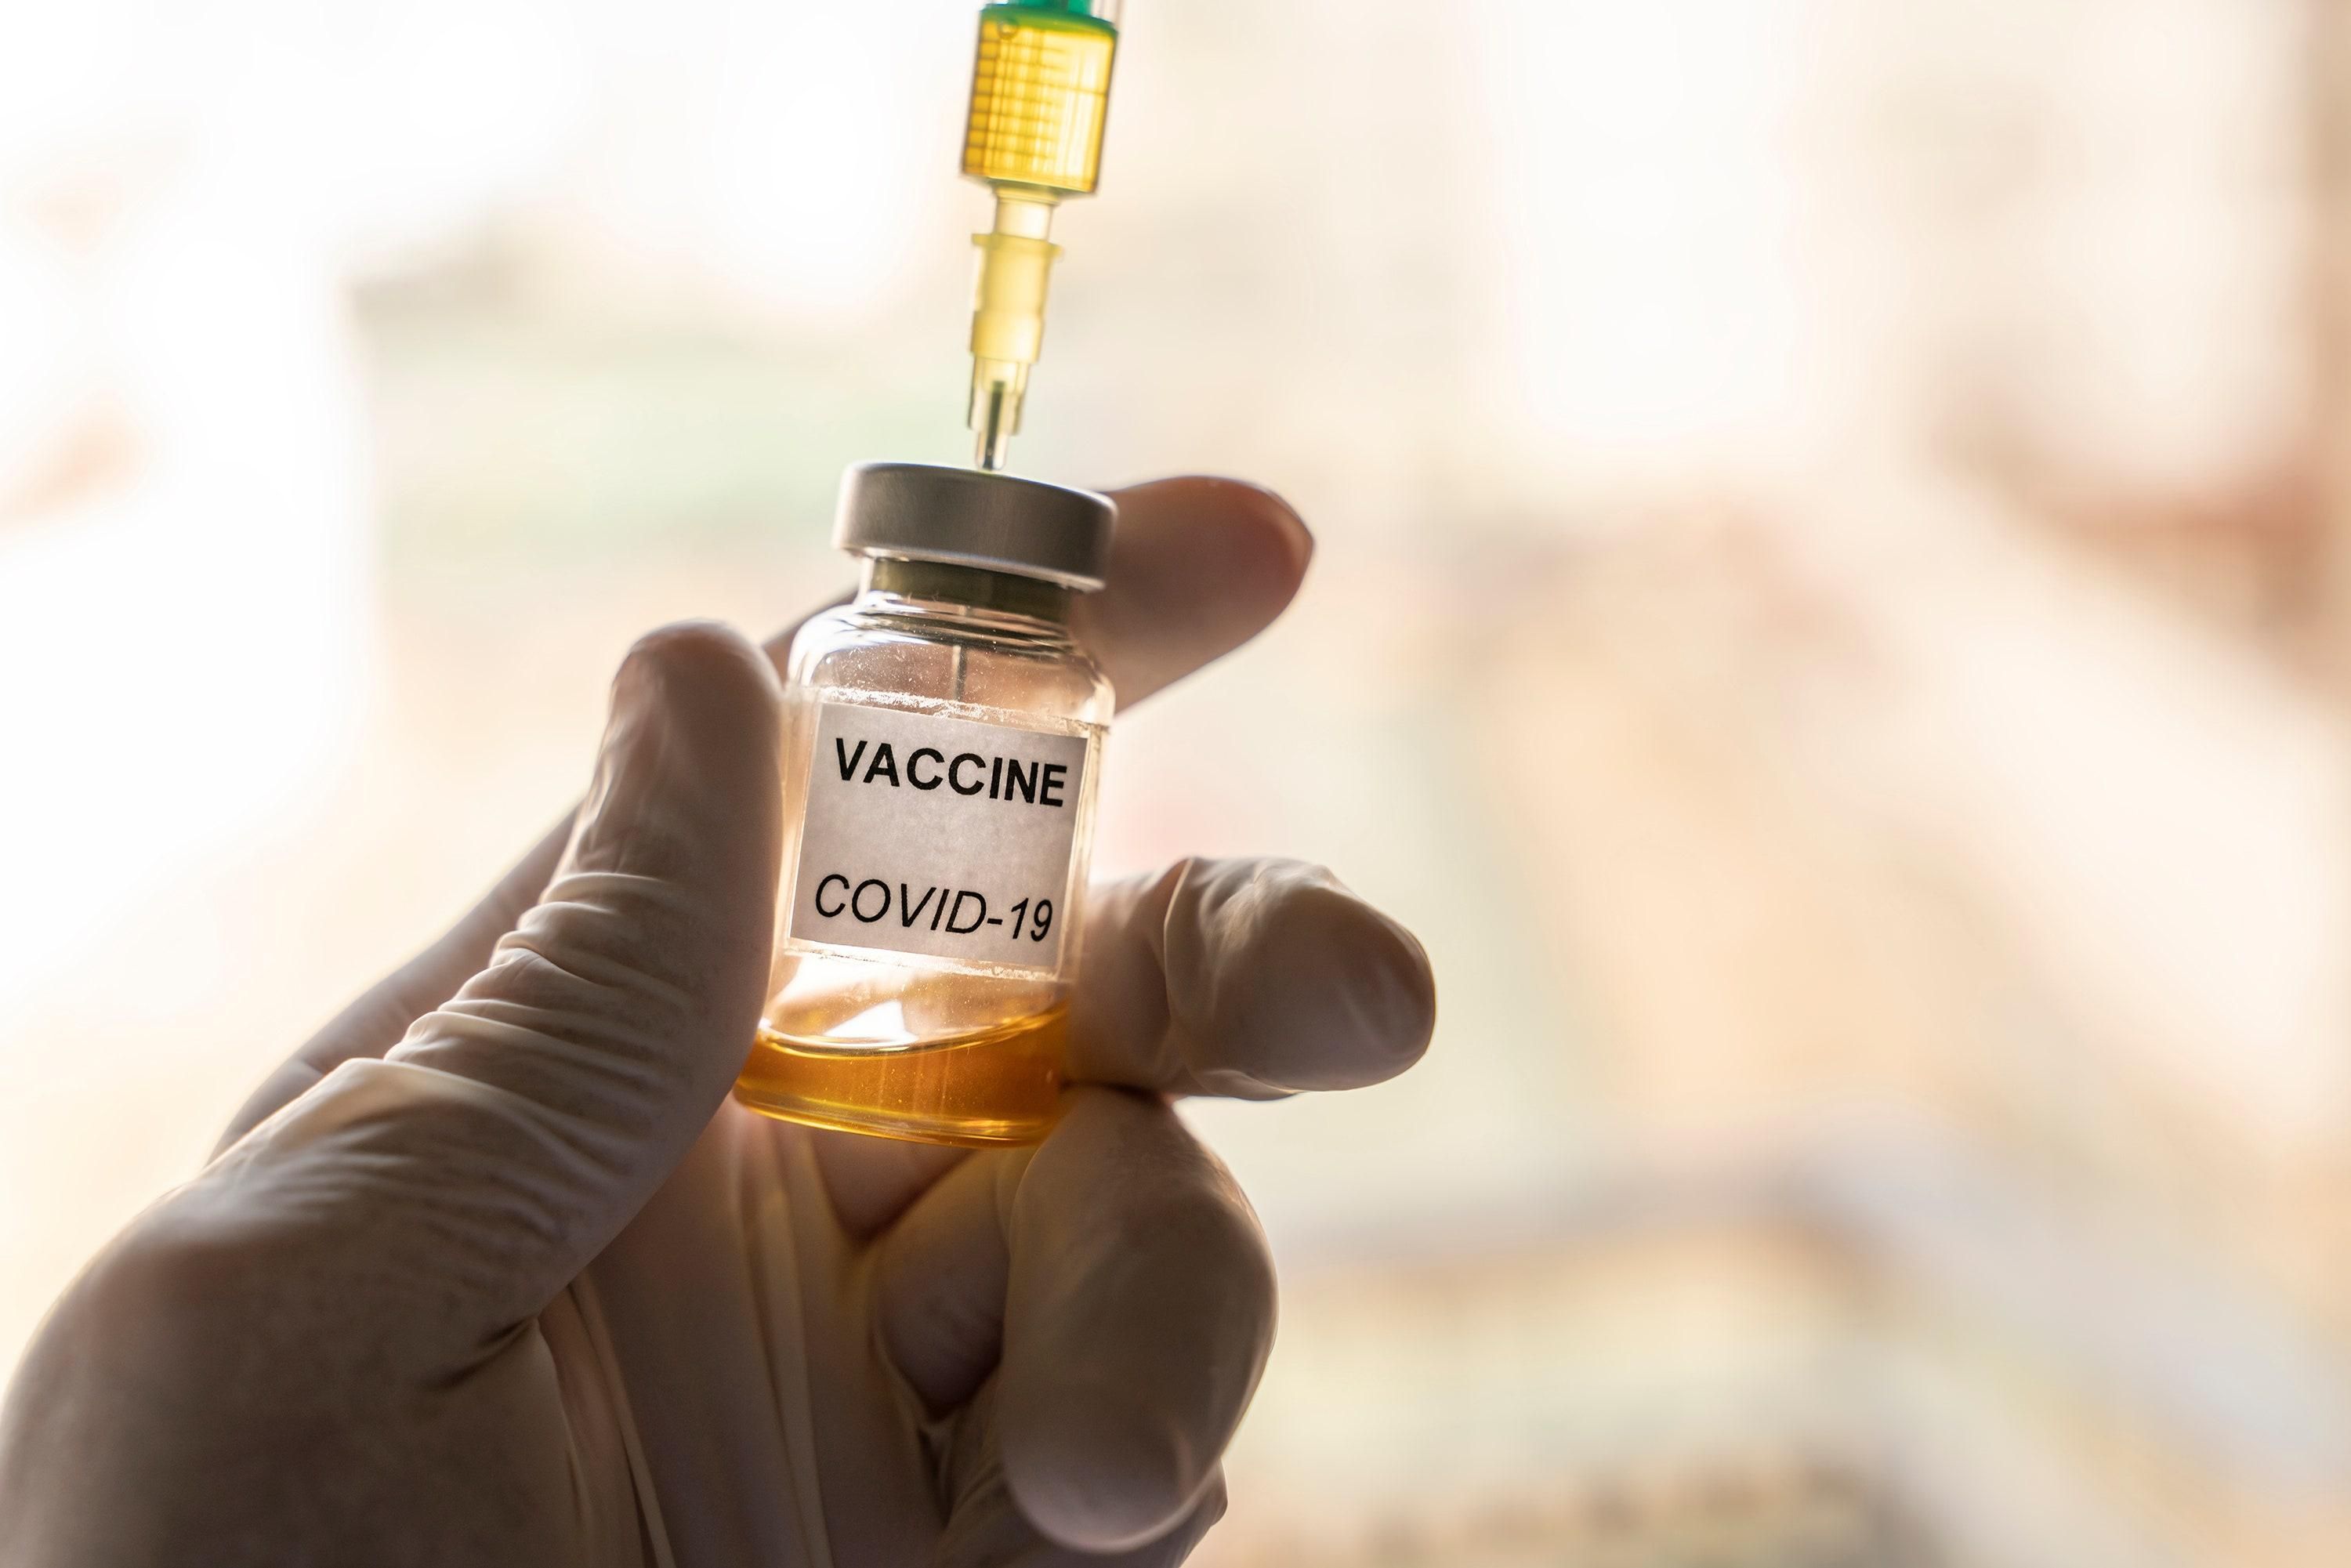 1 з 10 зможе вакцинуватись від COVID-19: чому бідні країни не будуть захищені